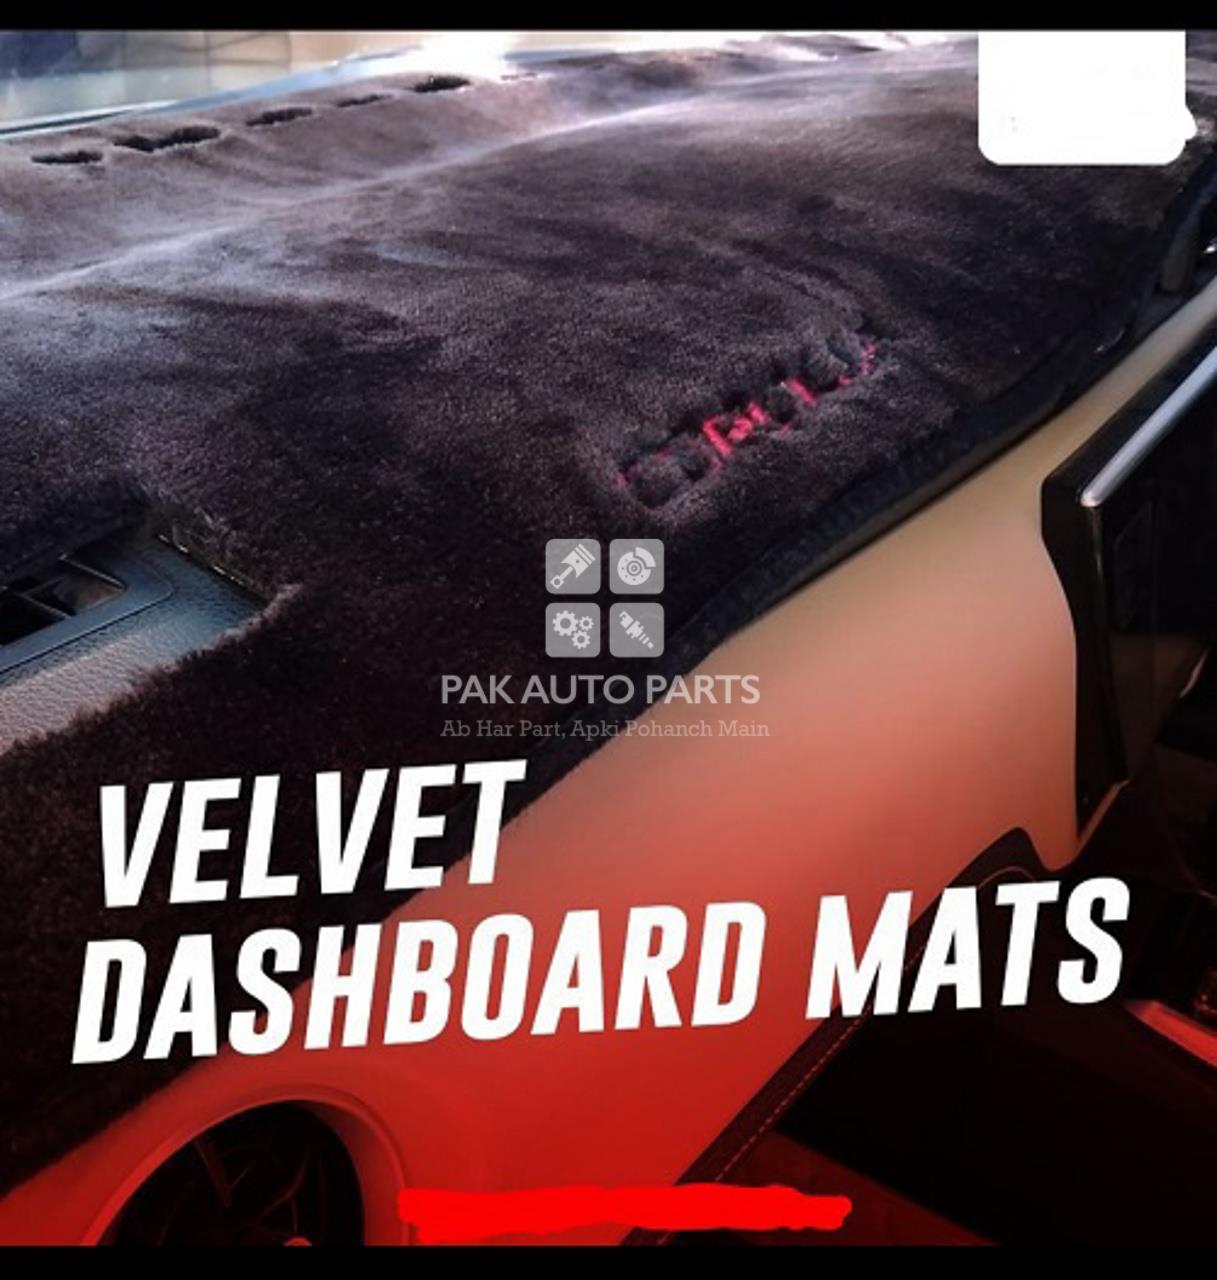 Picture of New Proton X70 Fur Non- Slip Dashboard Mat Cover Premium Quality